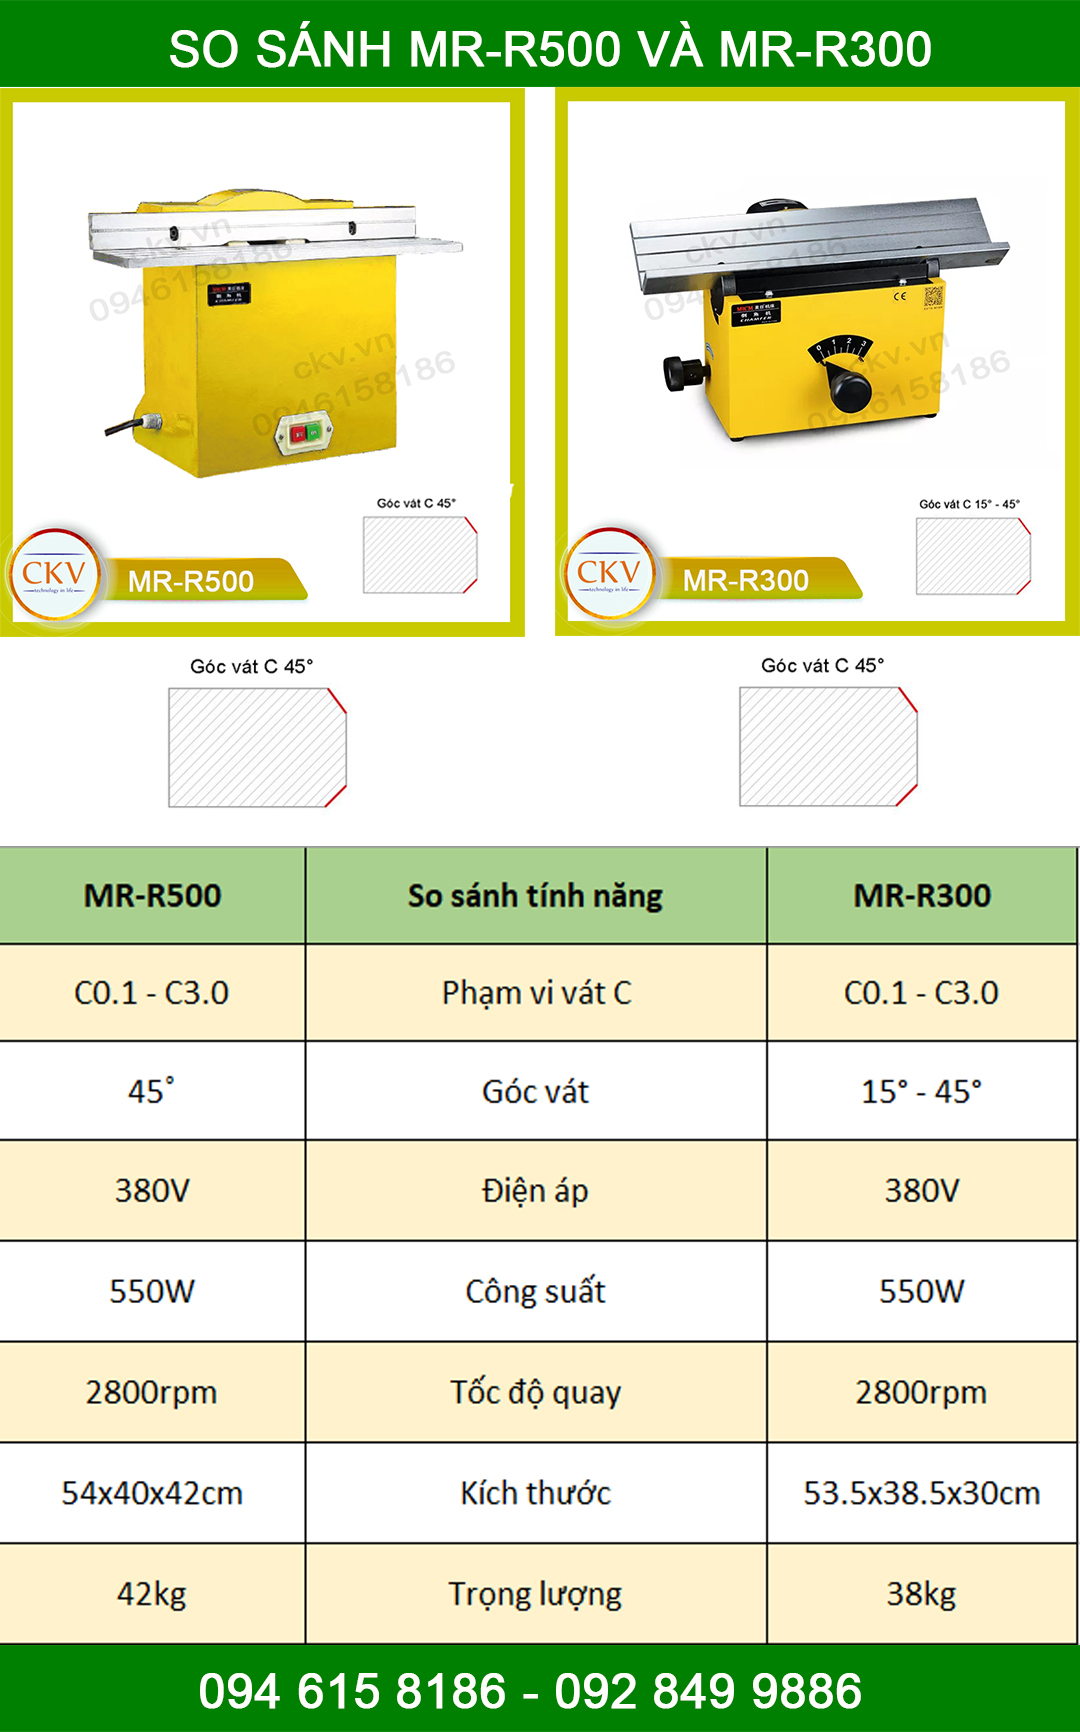 So sánh MR-R300 và MR-R500